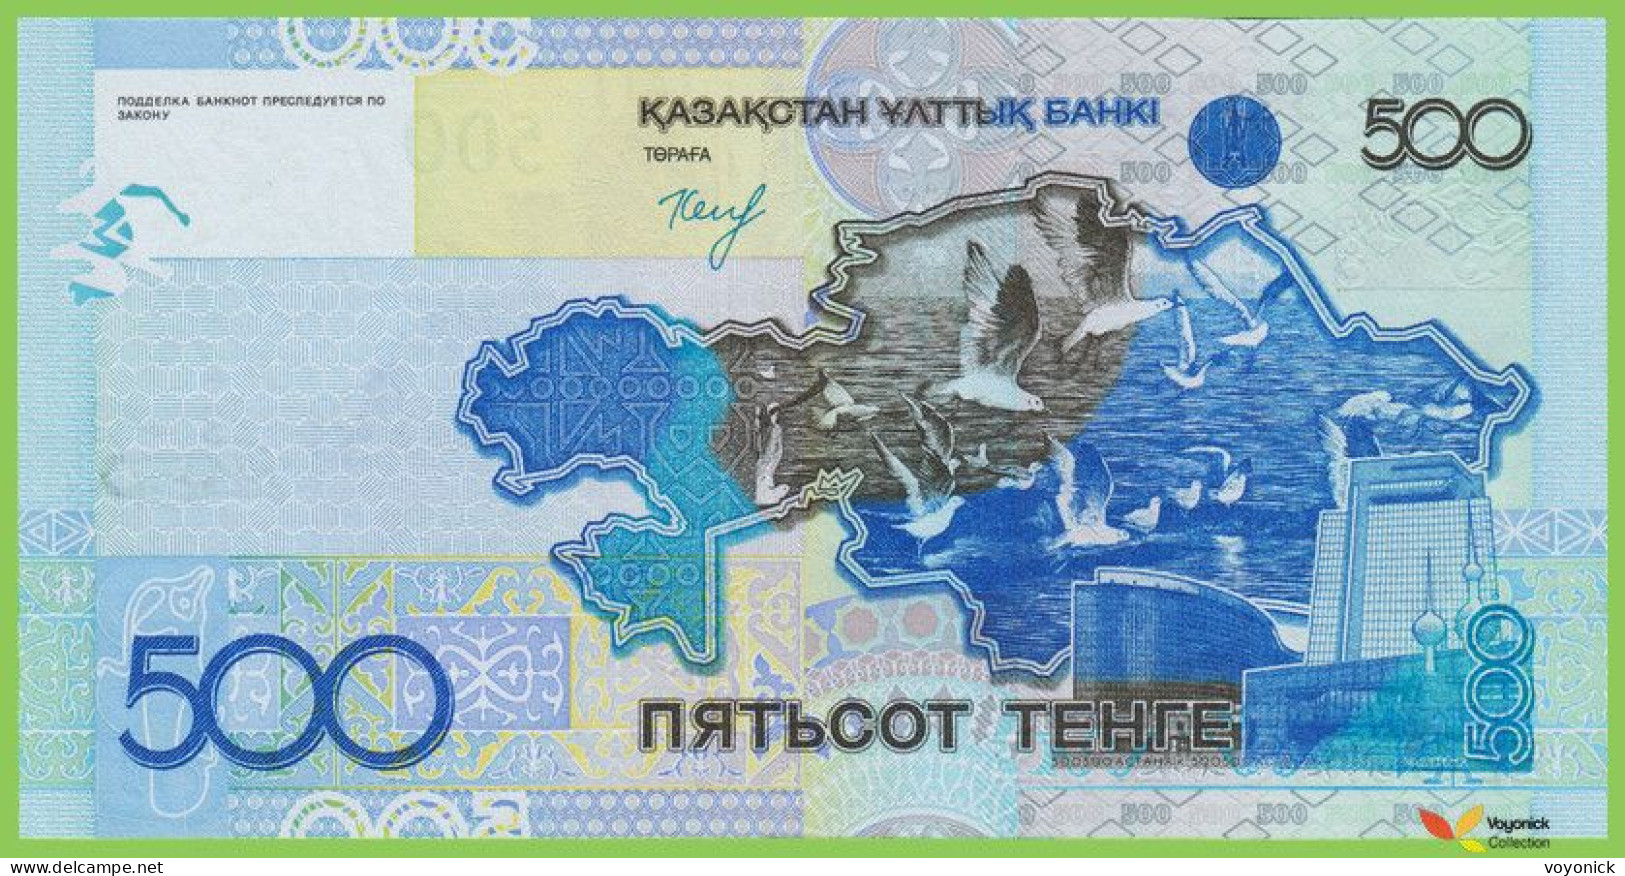 Voyo KAZAKHSTAN 500 Tenge 2006(2015) P29b B129b EK UNC - Kazakhstan